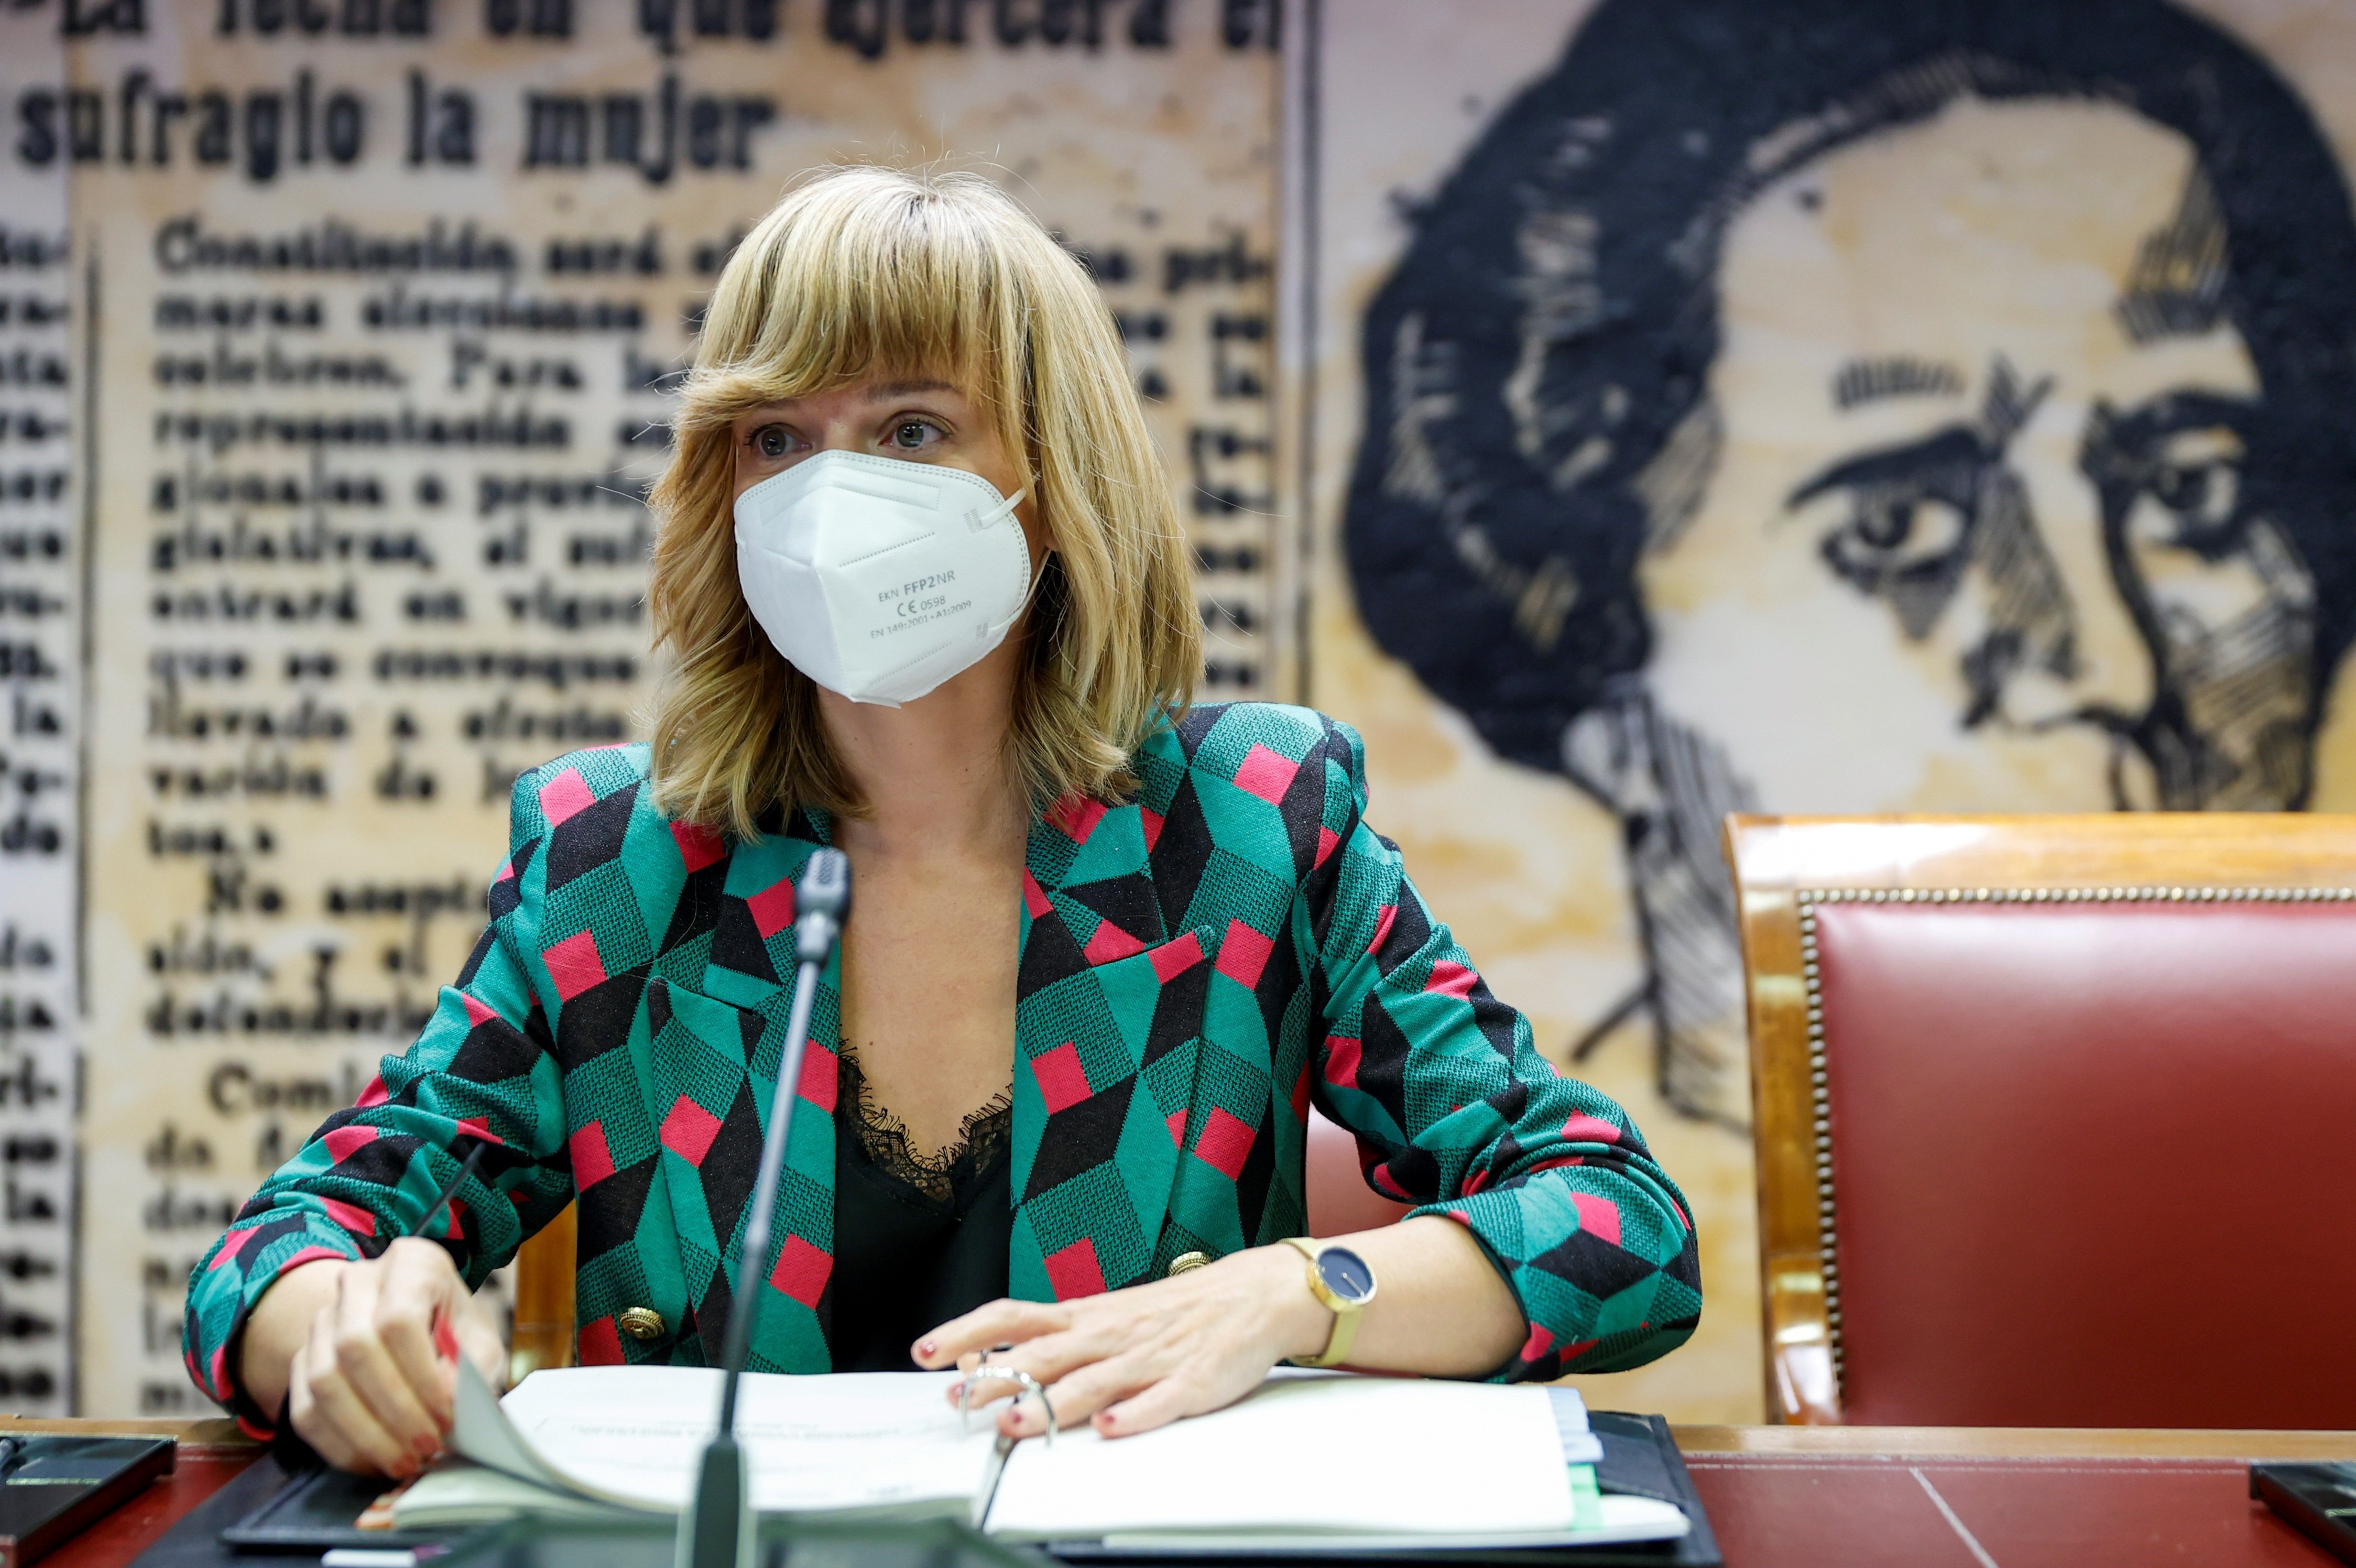 Alegría insisteix que s'ha de complir el 25% de castellà: "No hi ha debat"